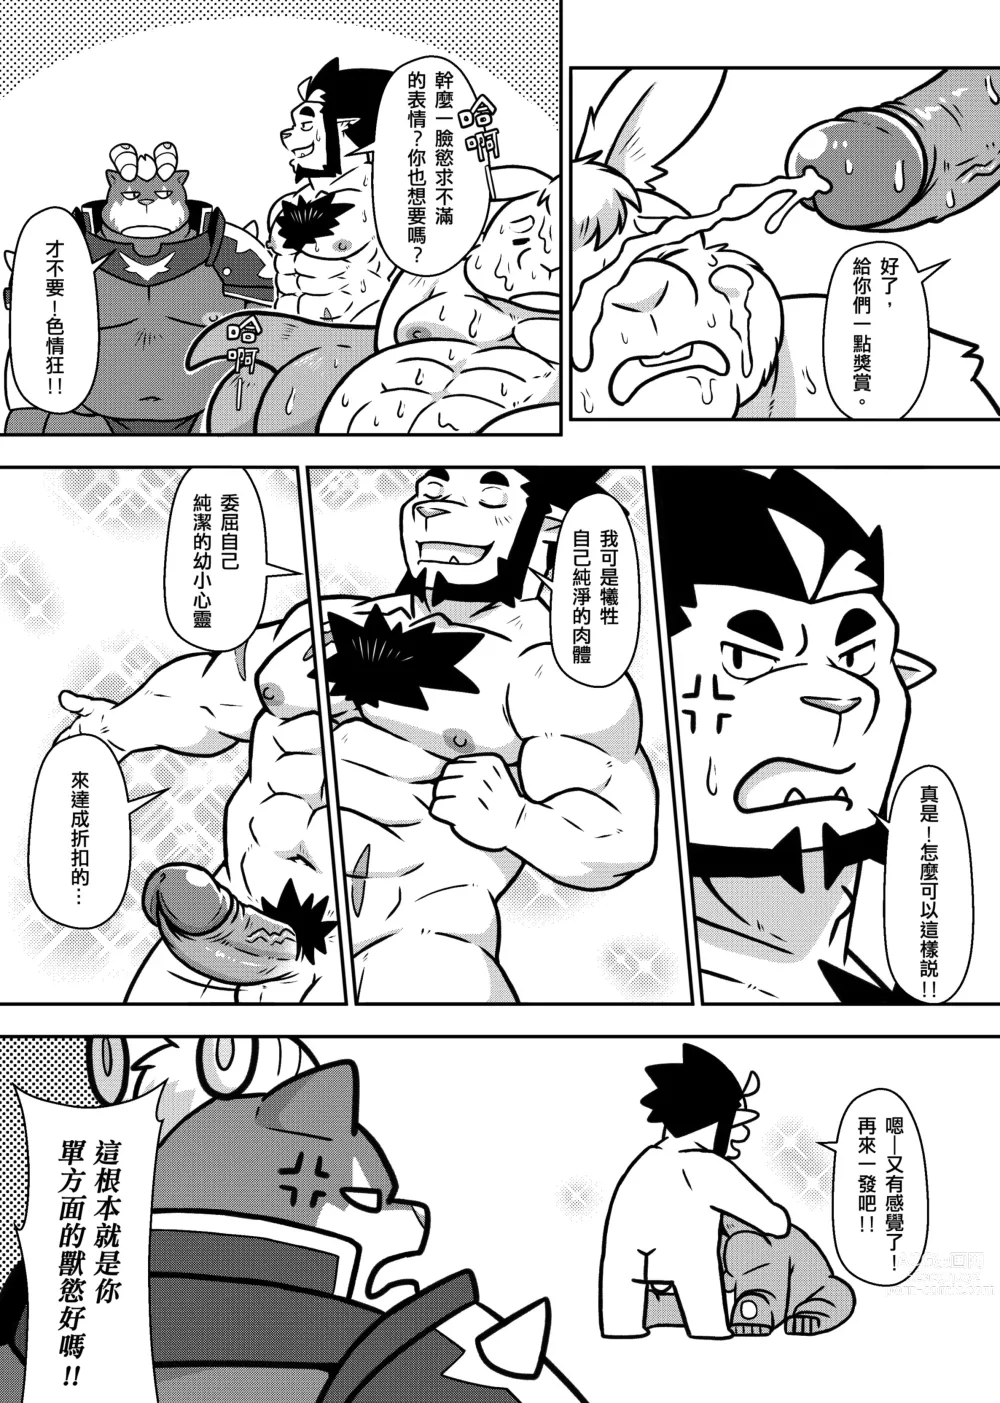 Page 8 of doujinshi 勇者的大小只有魔王塞得下2